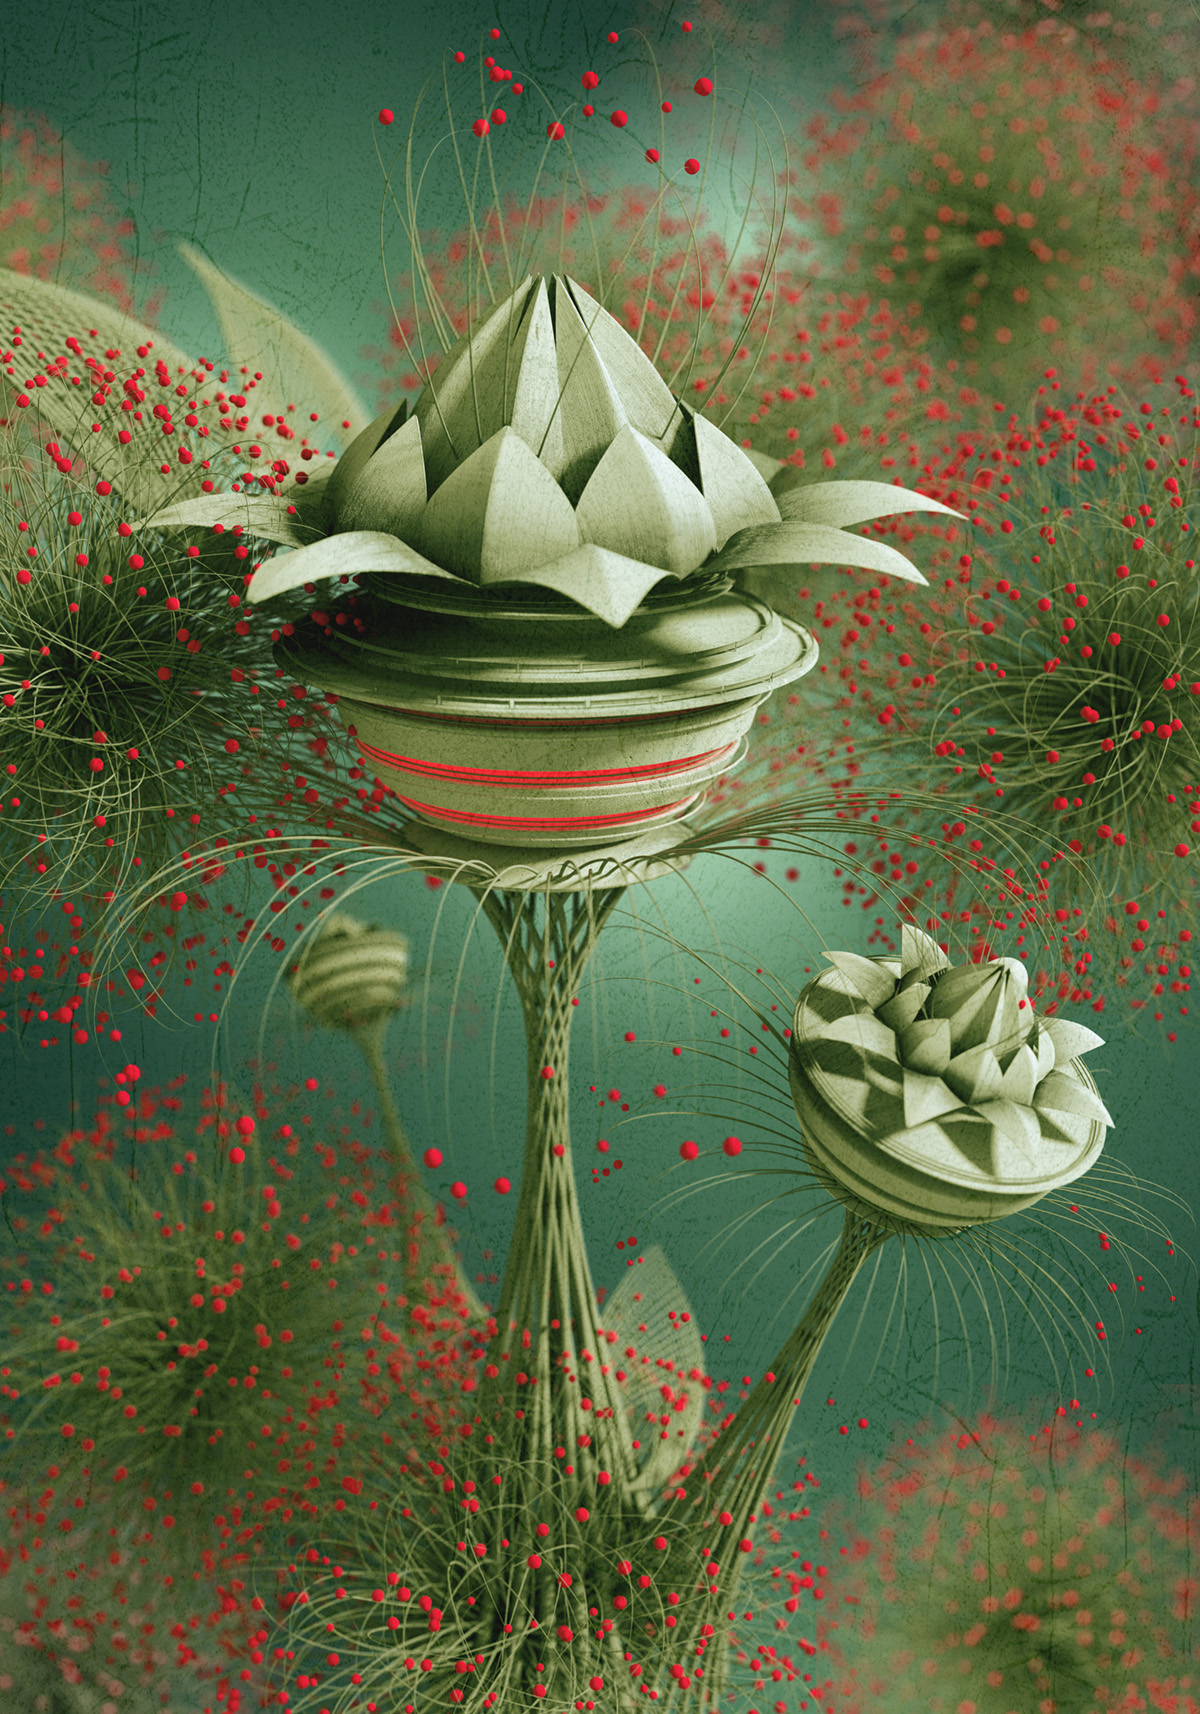 3D blender flower abstract creative